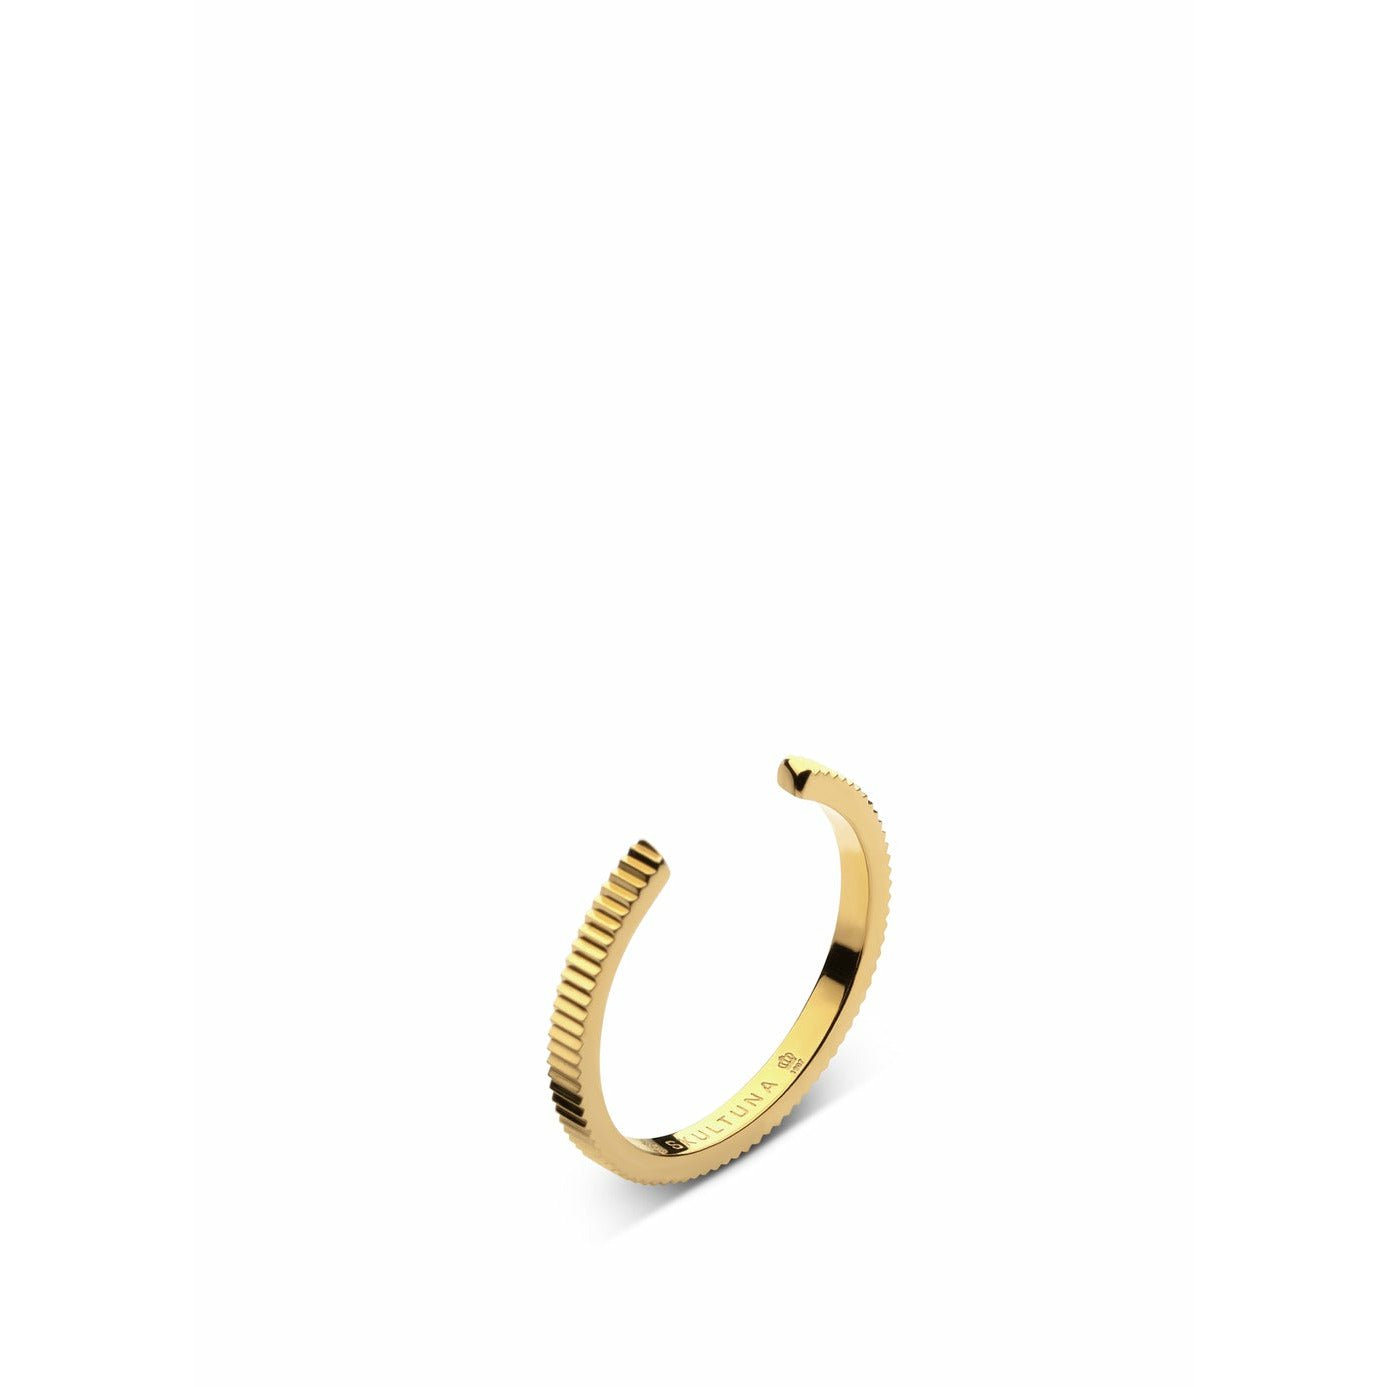 Skultuna žebrované tenké prstencové médium 316 l ocelové zlaté, Ø1,73 cm